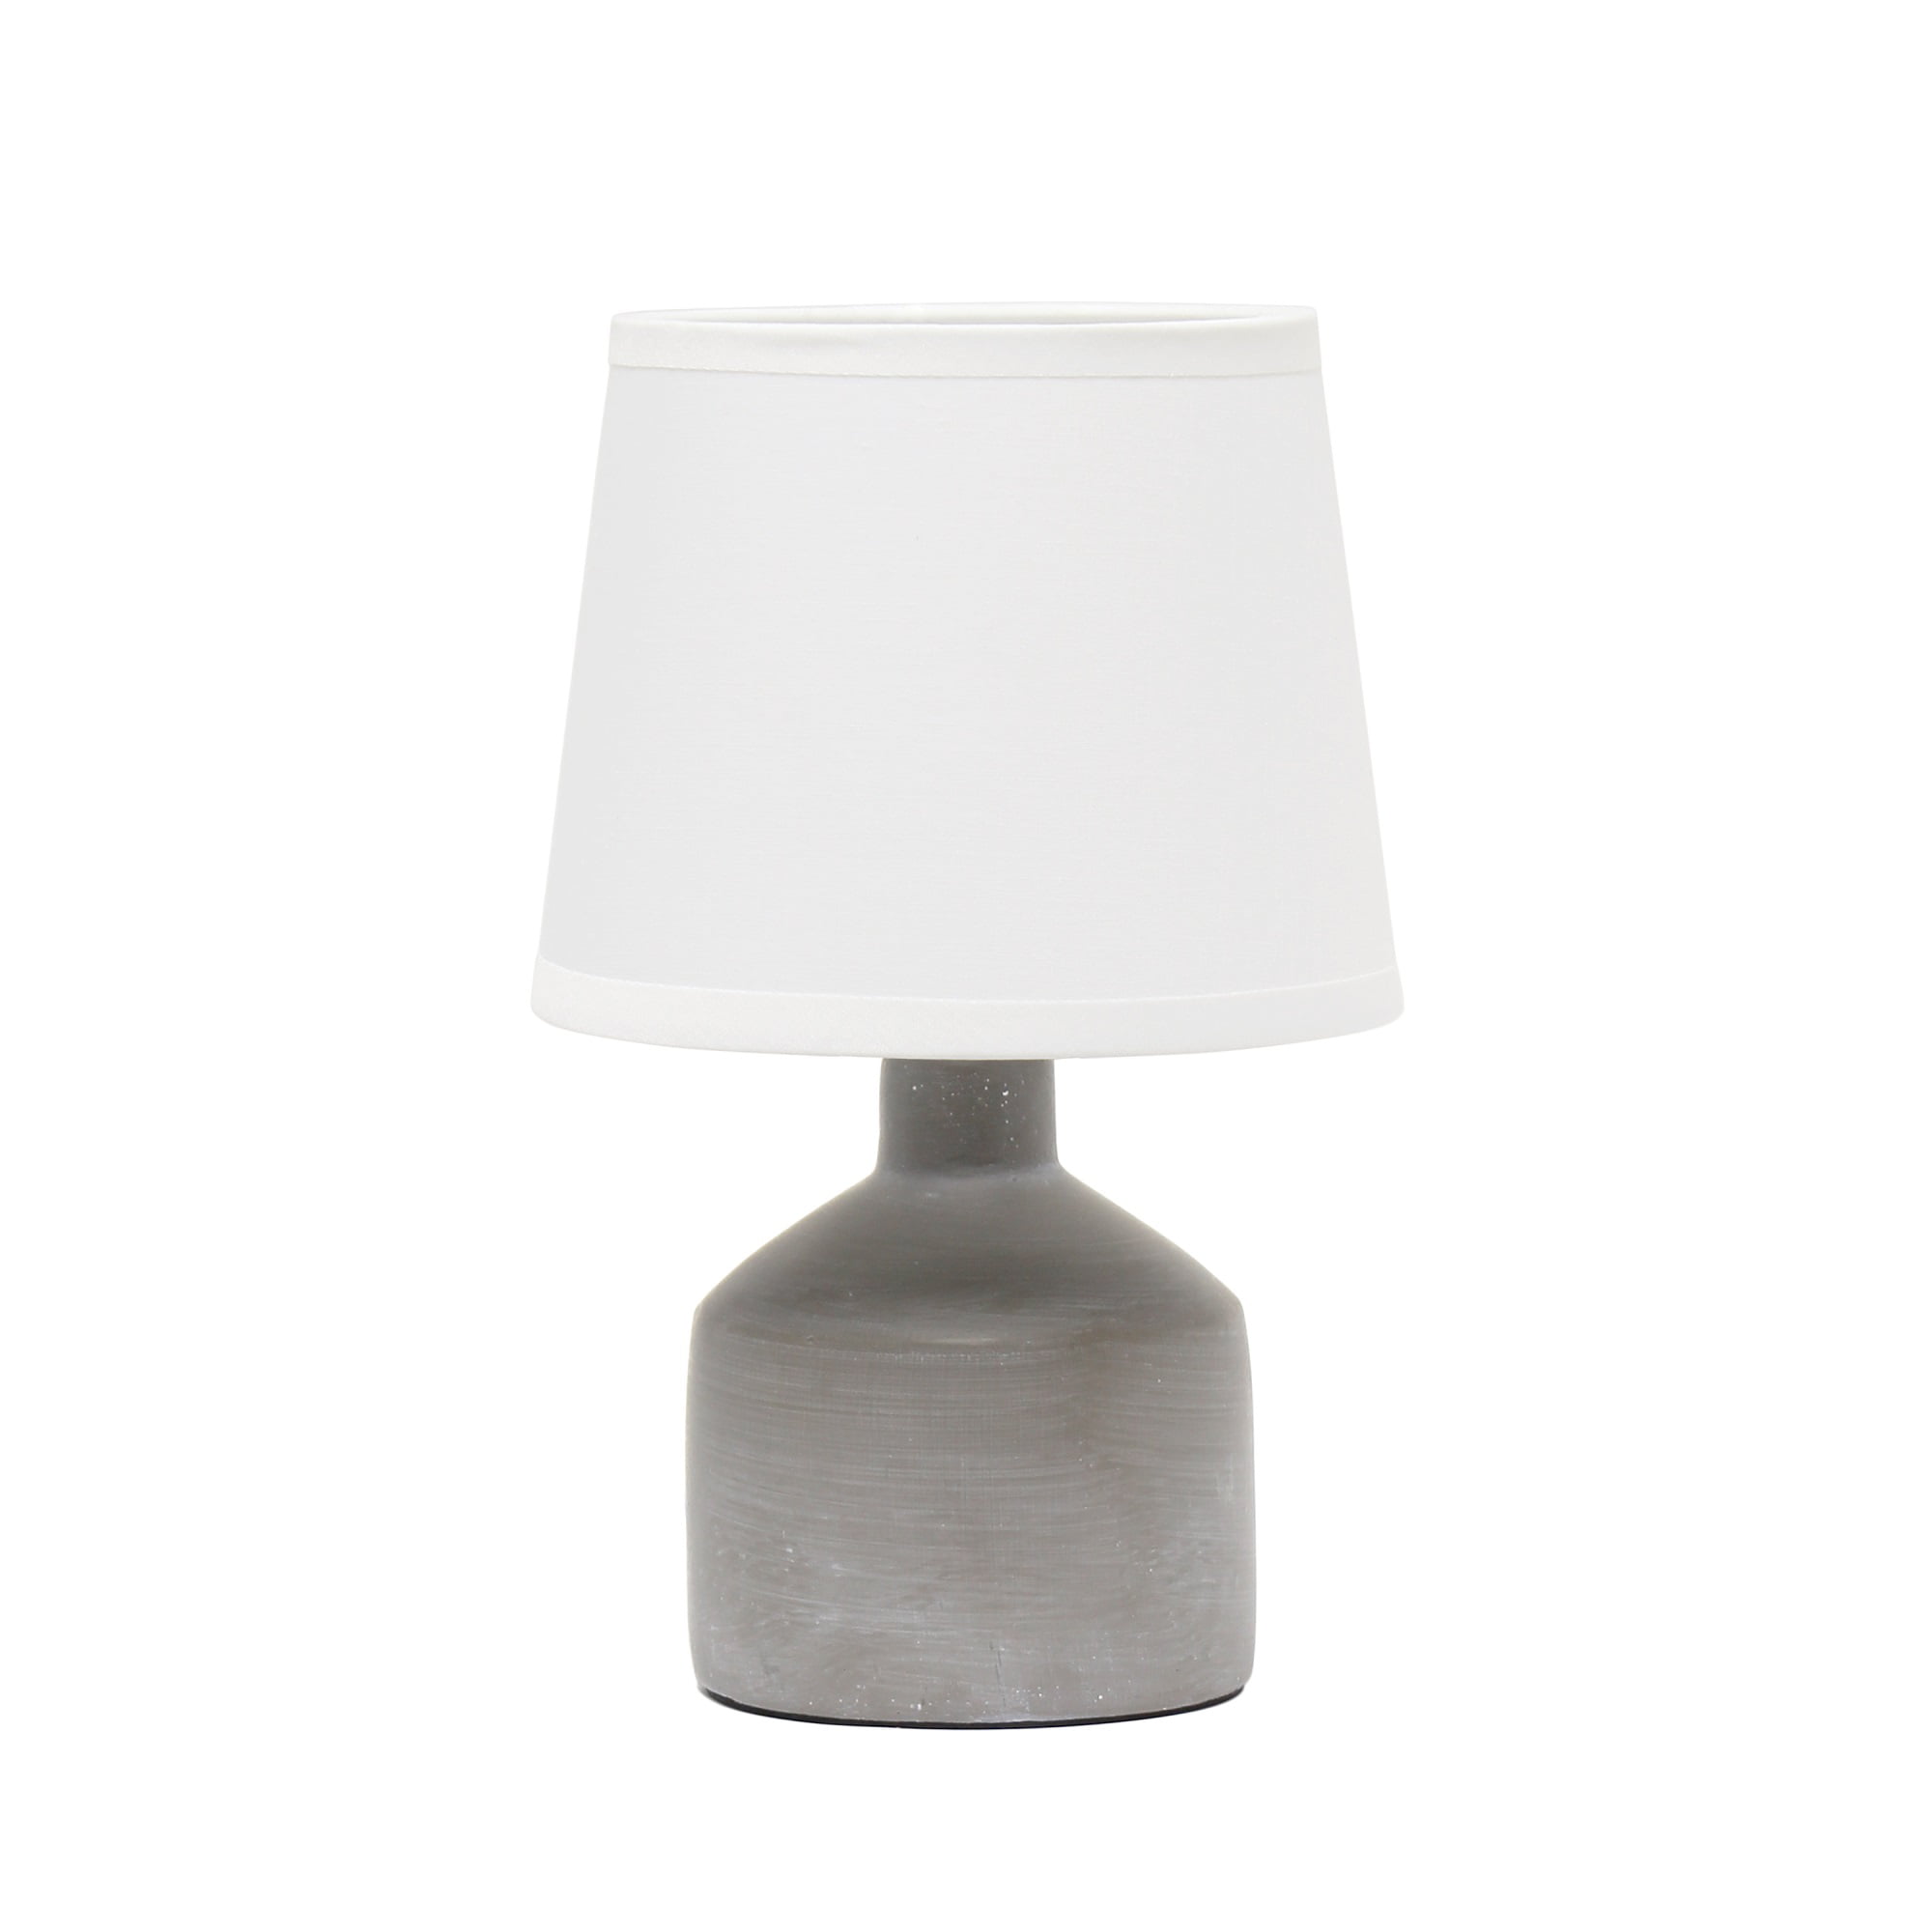 Simple Designs Mini Bocksbeutal Ceramic Table Lamp, Gray